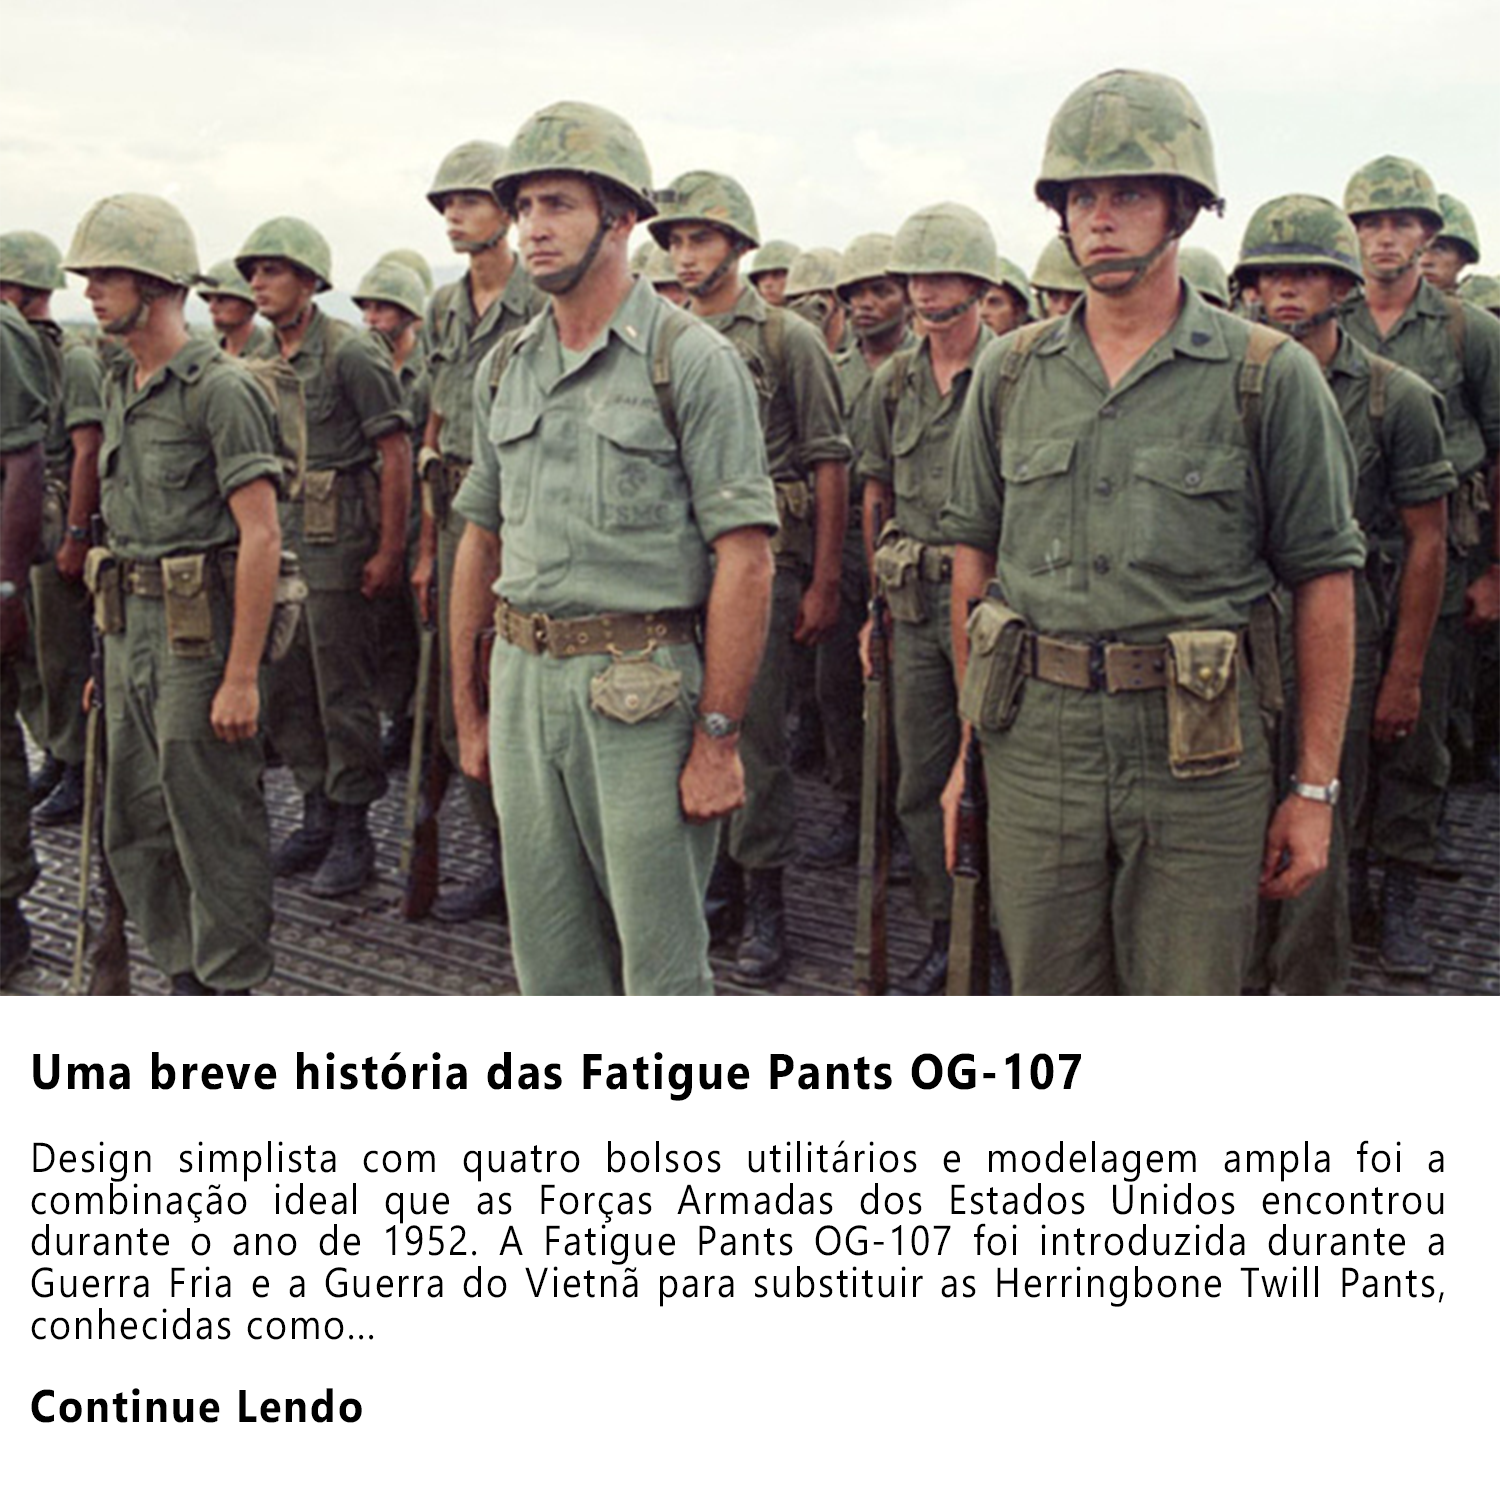 conheça mais sobre a história das fatigue pants og-107, calças utilitárias usadas pelo exército dos estados unidos